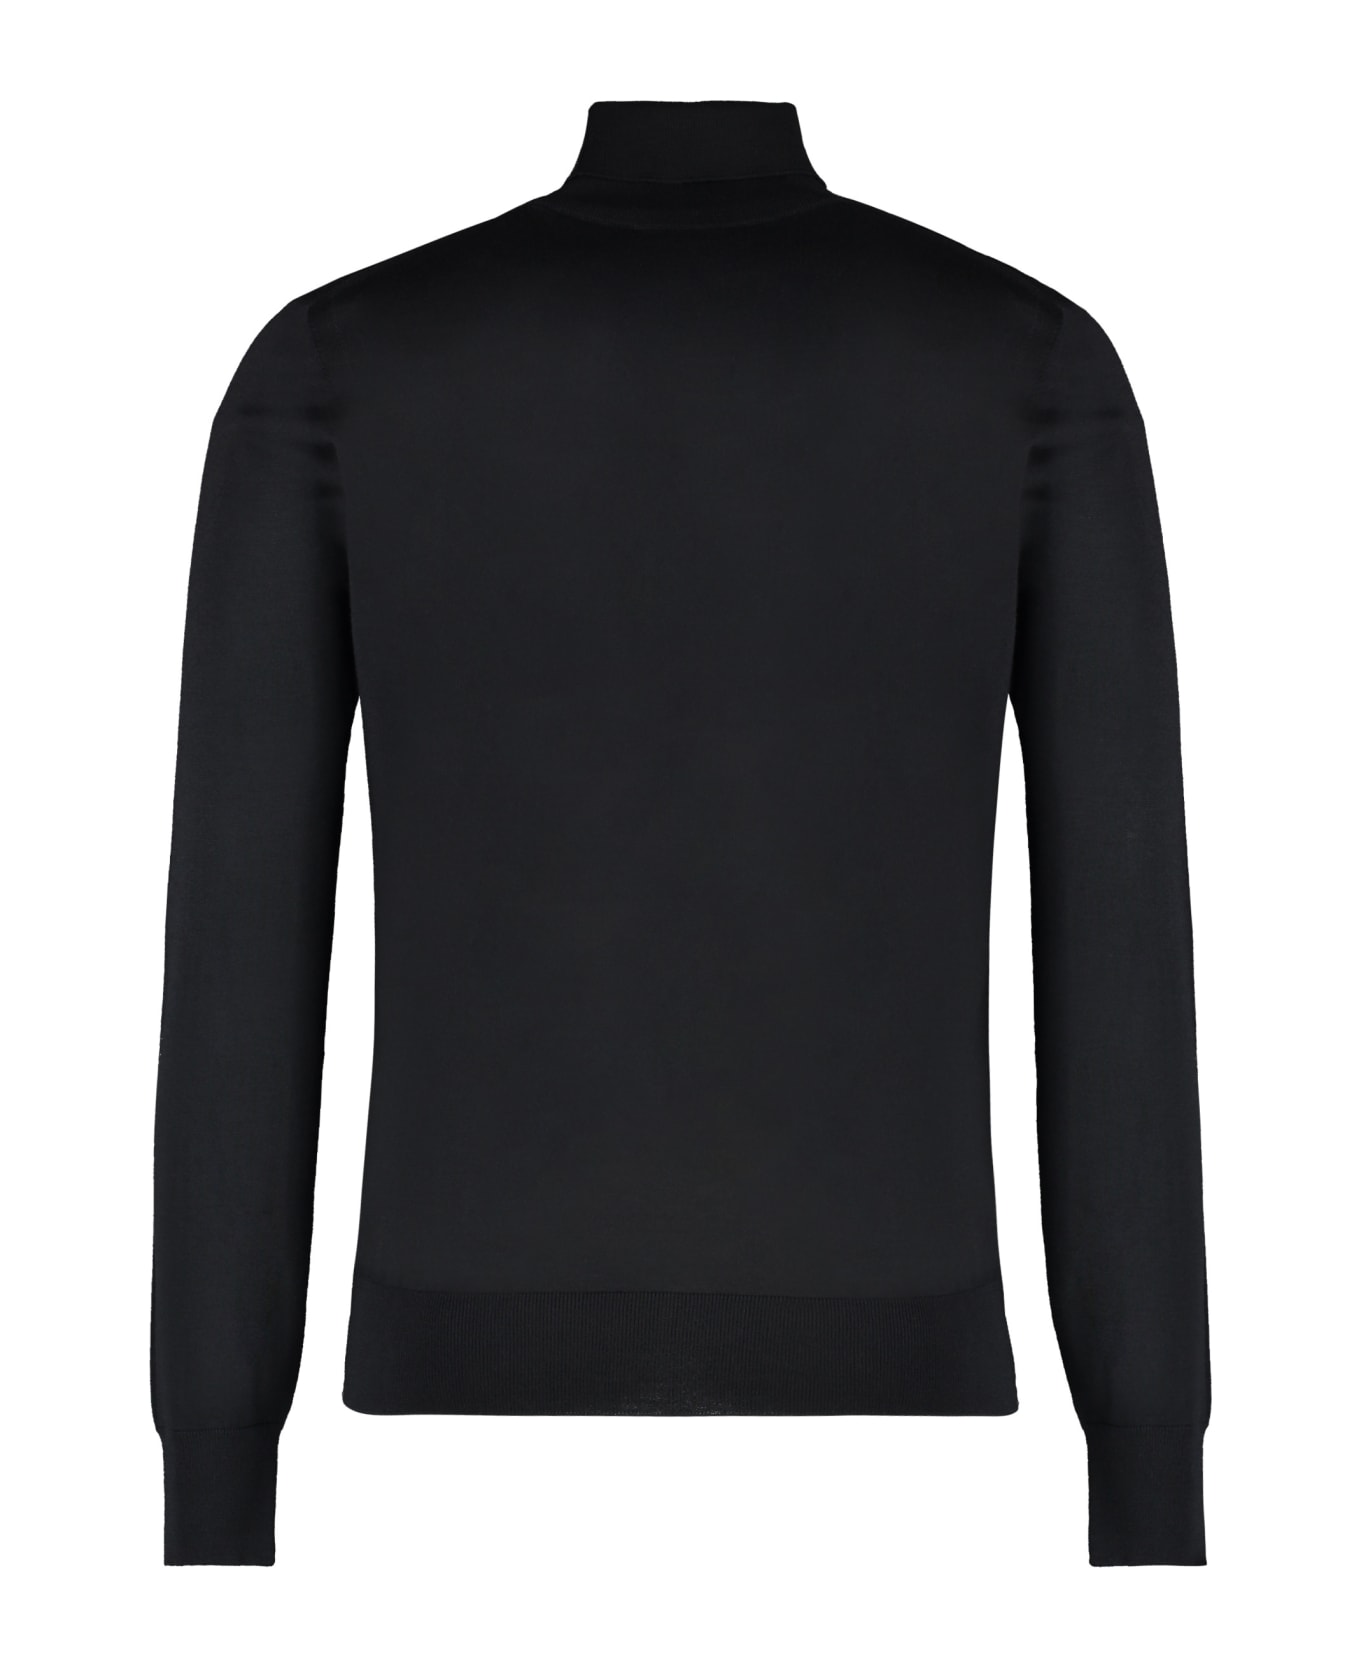 Versace Wool Blend Turtleneck Sweater - black ニットウェア